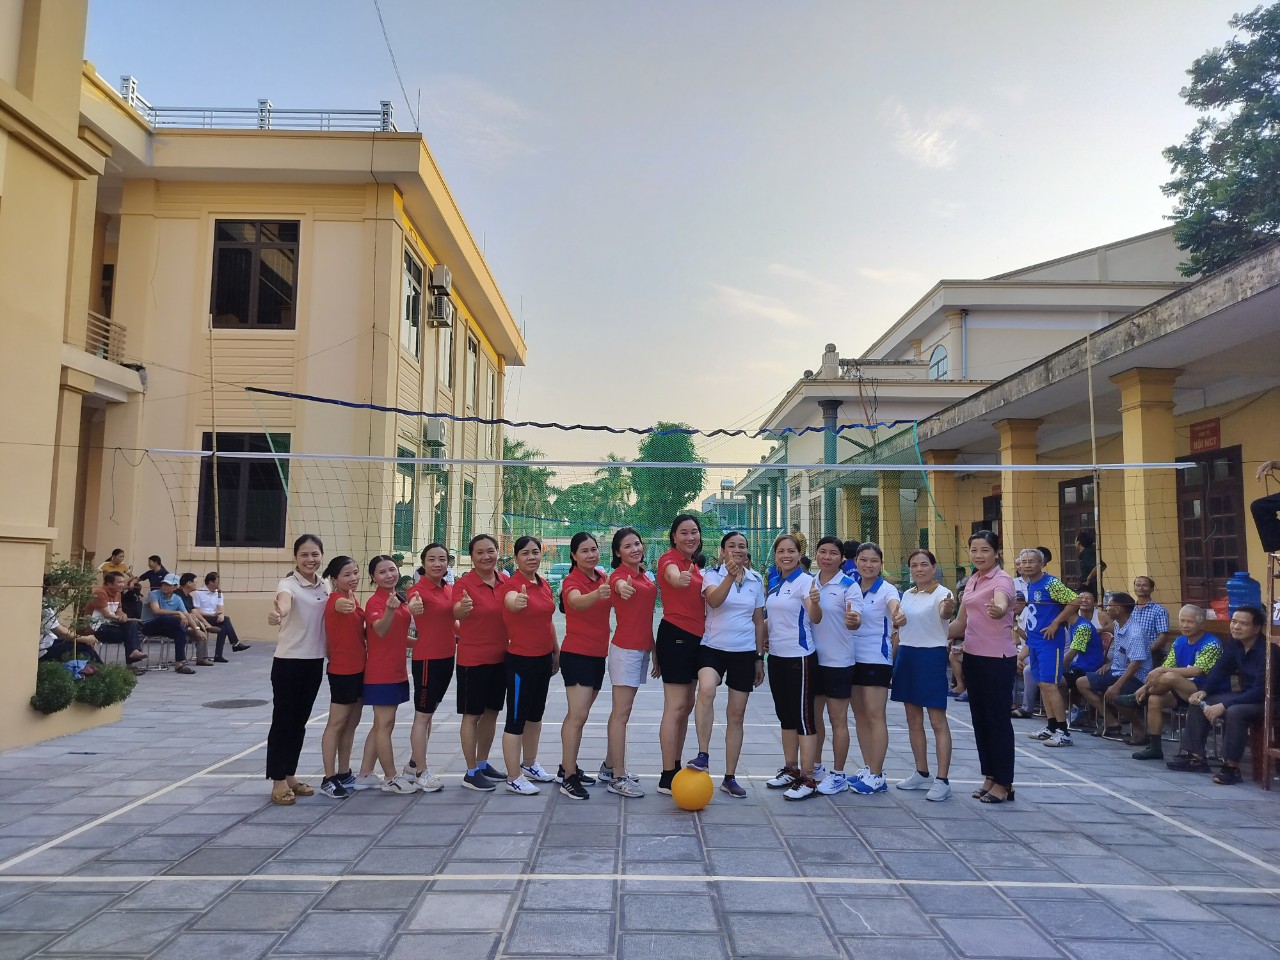 Một số· hình ảnh nổi bật trong trận giao hữu bóng chuyền hơi nữ giữa đội nữ xã Khánh Nhạc gặp đội nữ xã Khánh Hội